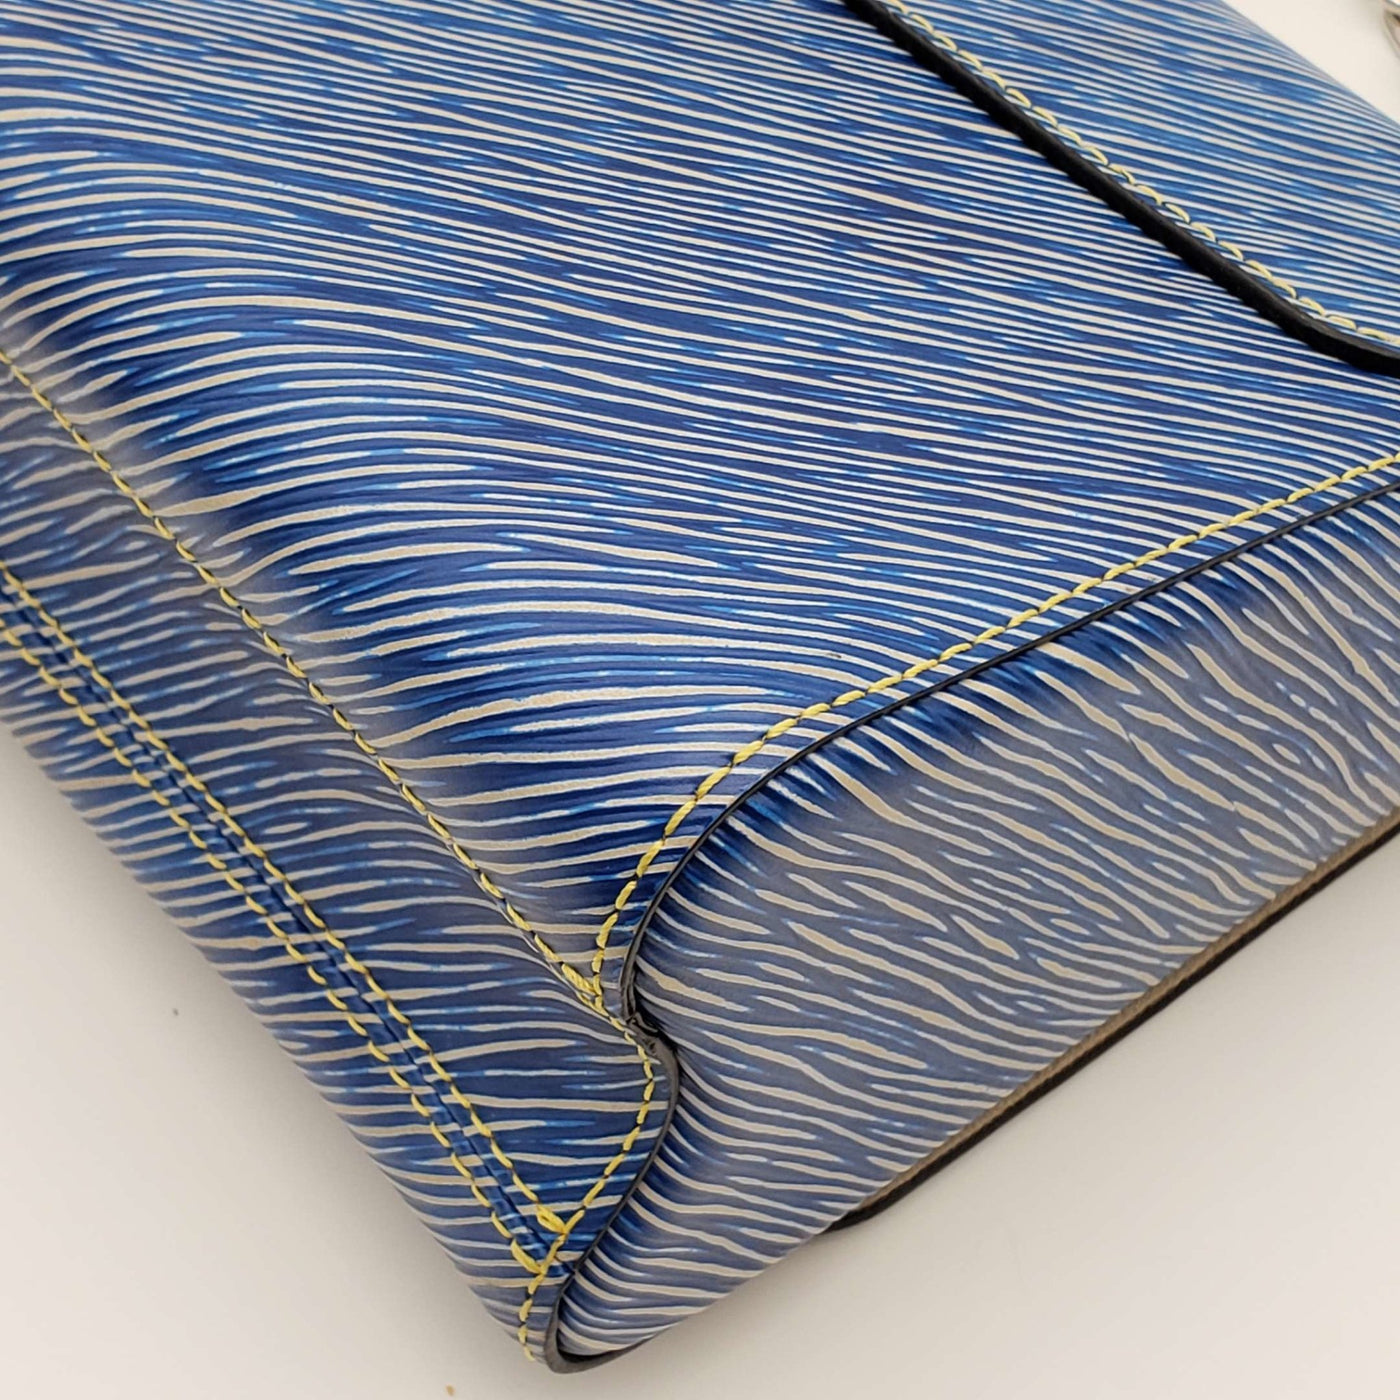 Louis Vuitton Blue Denim Aztec Epi Leather Twist MM Bag - Yoogi's